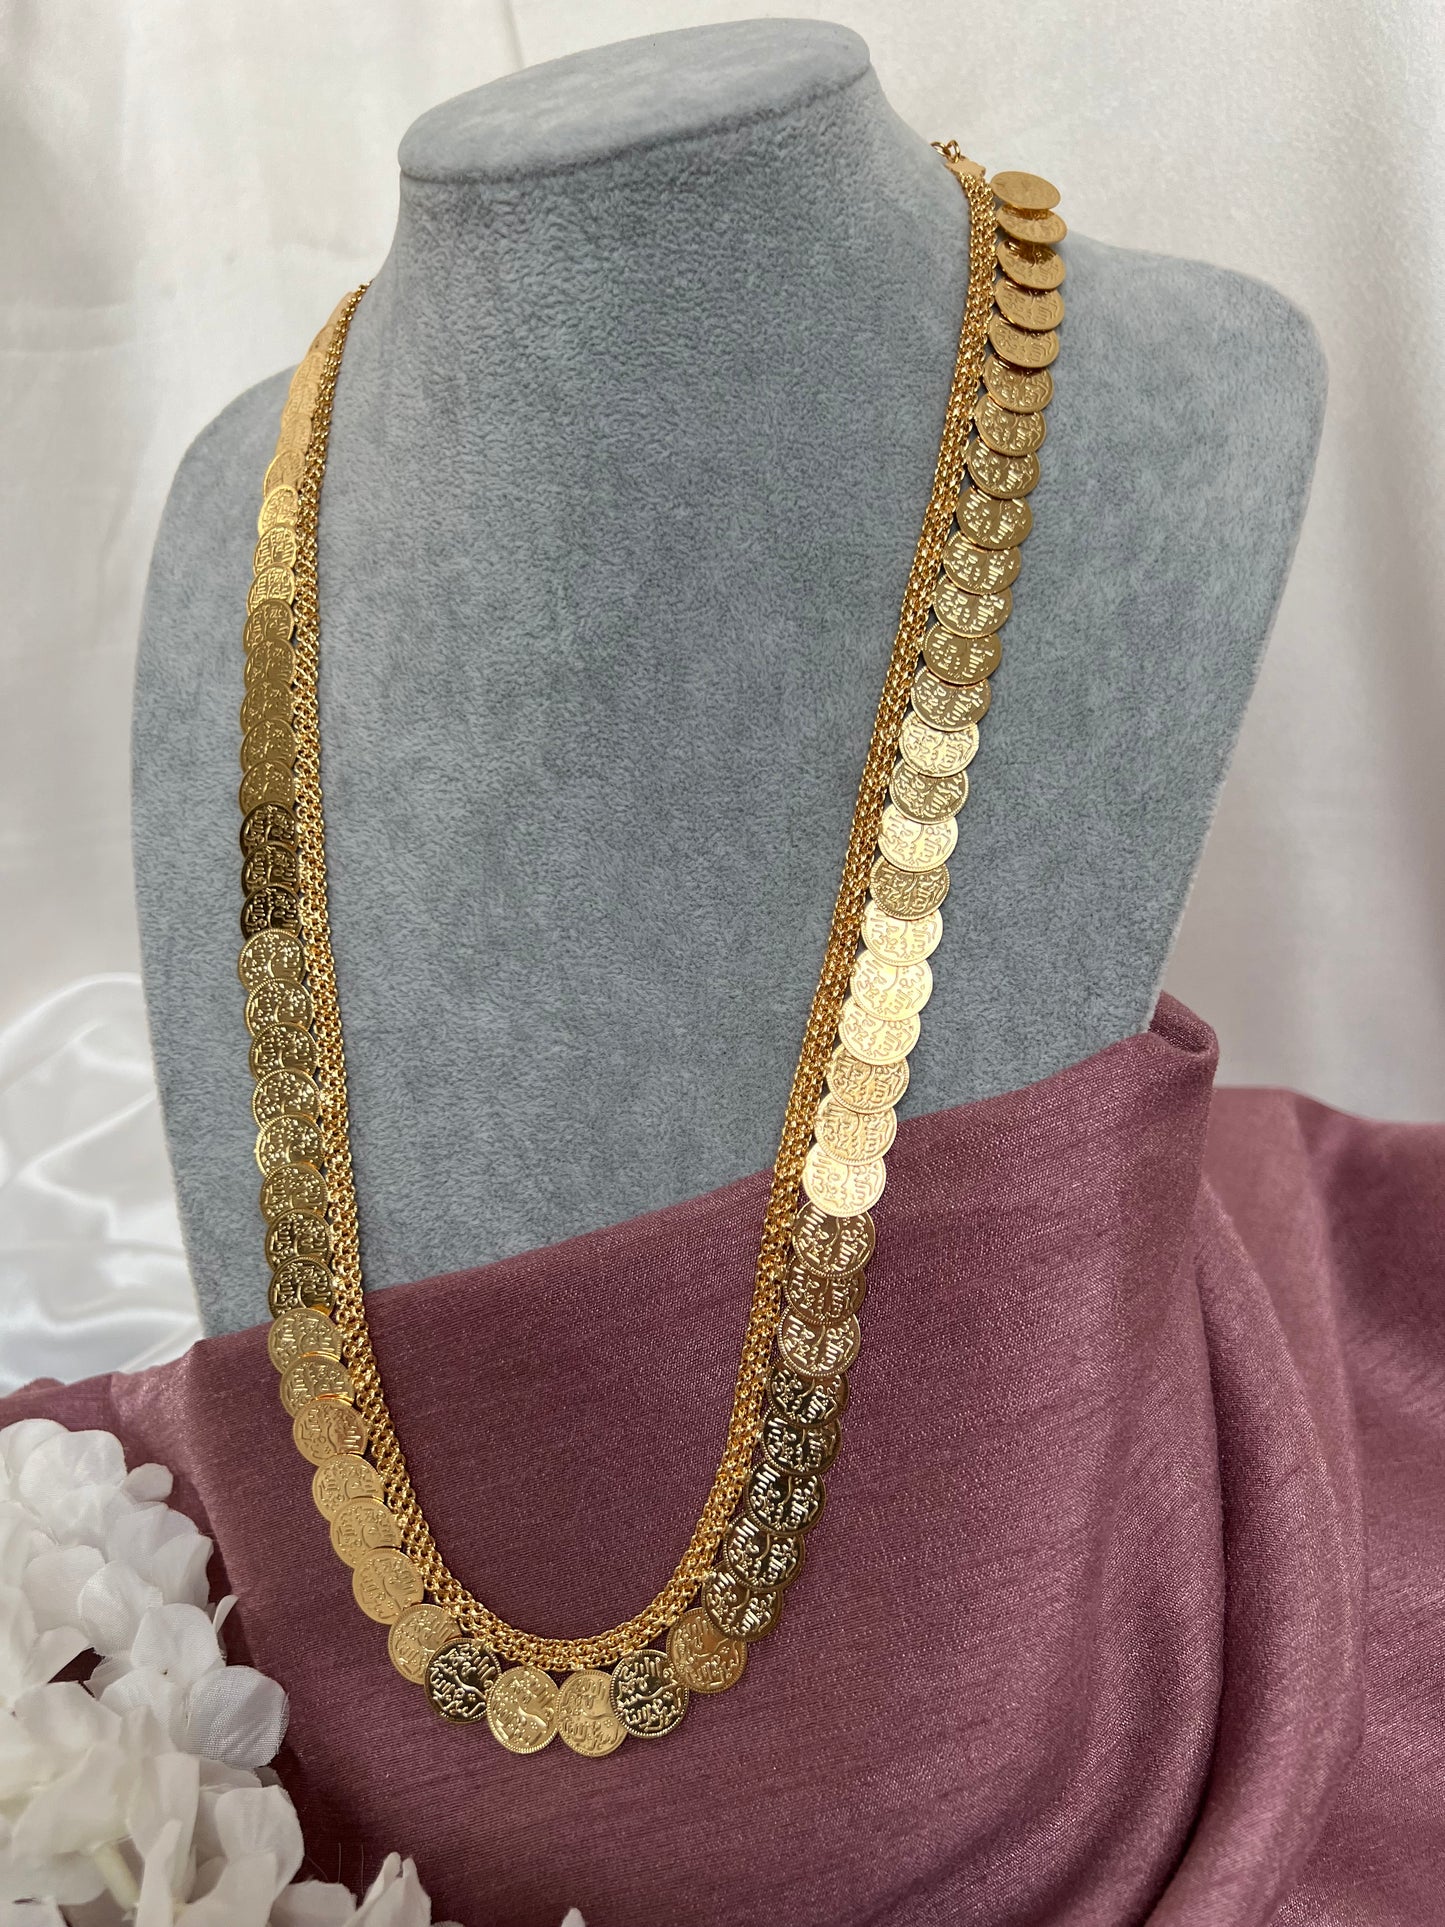 Kasu malai/haram necklace N3065